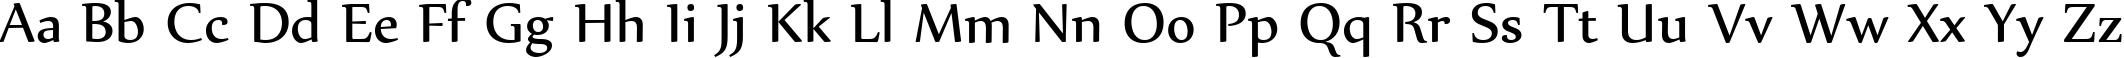 Пример написания английского алфавита шрифтом Nyala